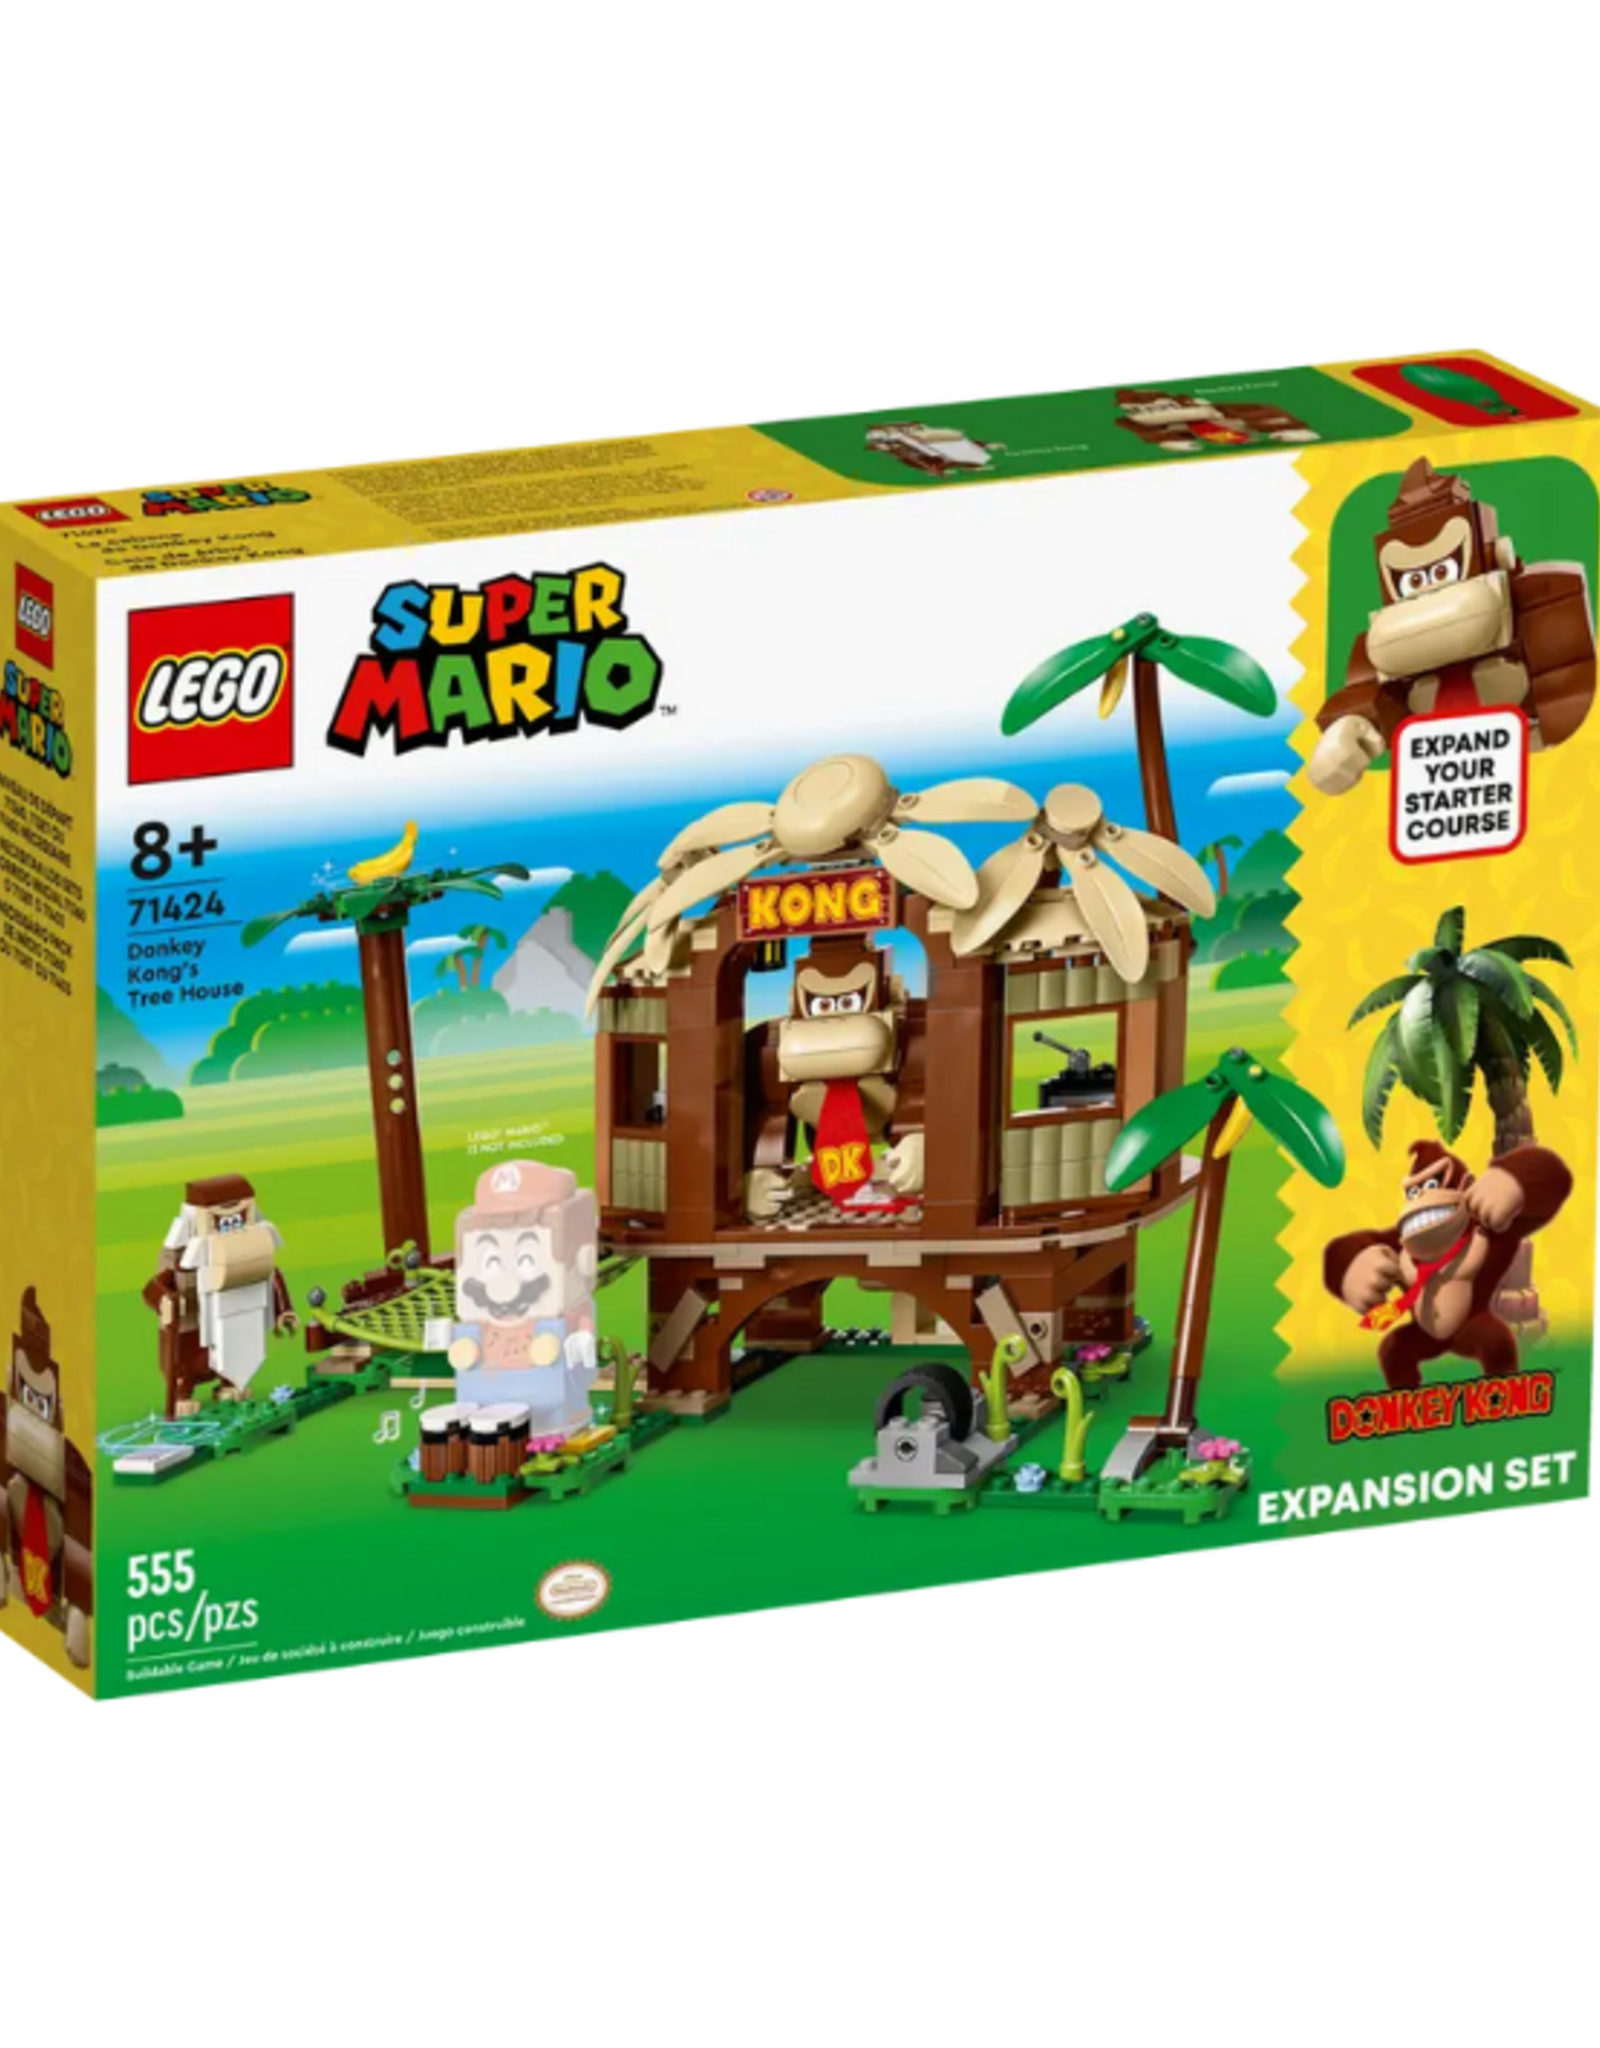 Lego Lego - Super Mario - 71424 - Donkey Kong's Tree House Expansion Set